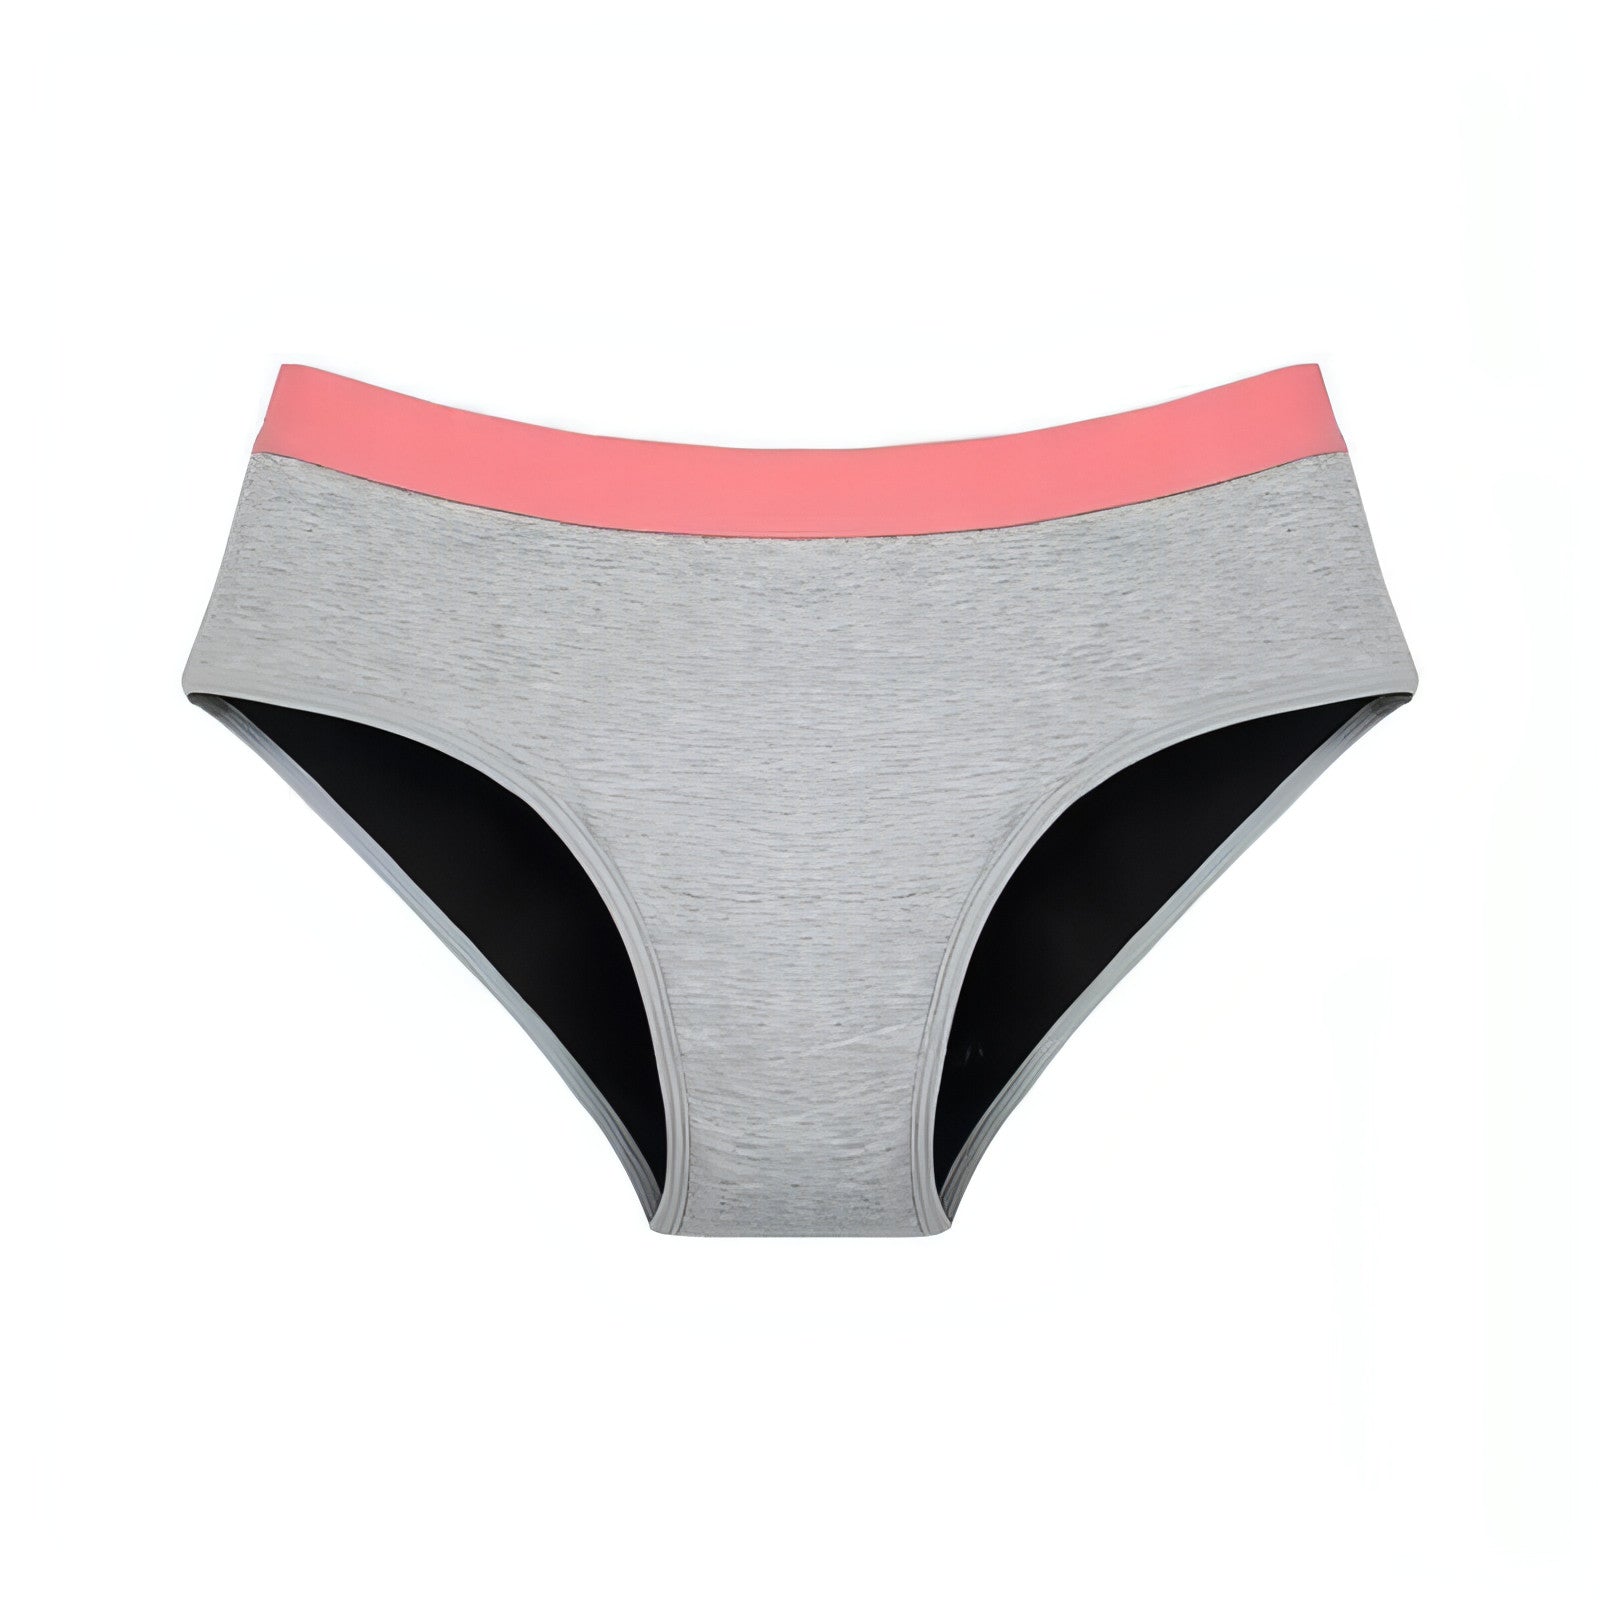 Teen Bikini 2pk - Bubble Gum Pink Period Underwear